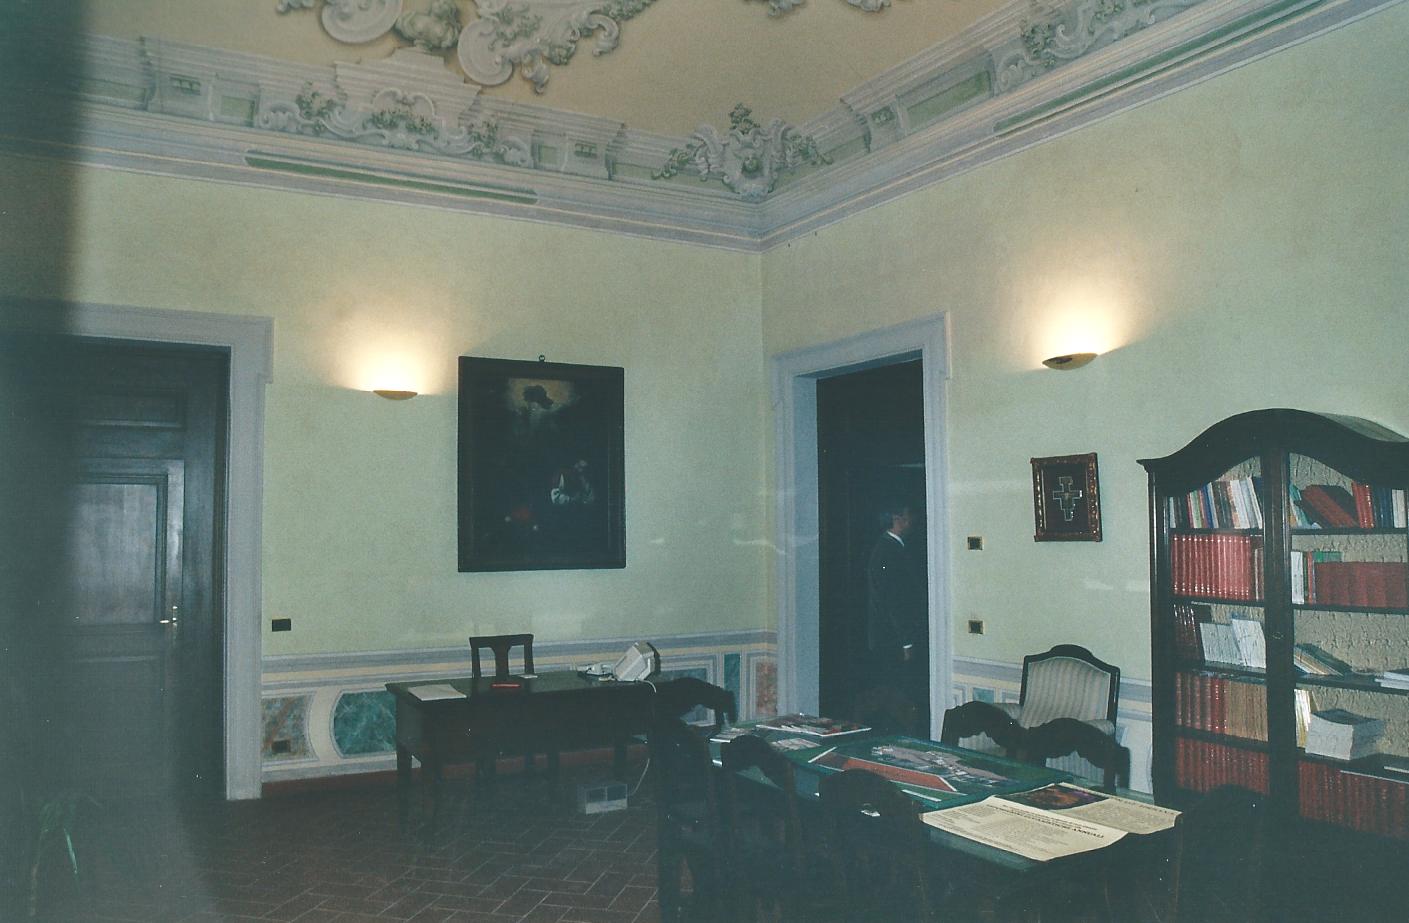 Palazzo Ariosti ora Palazzo Vescovile (palazzo, vescovile) - Grosseto (GR) 